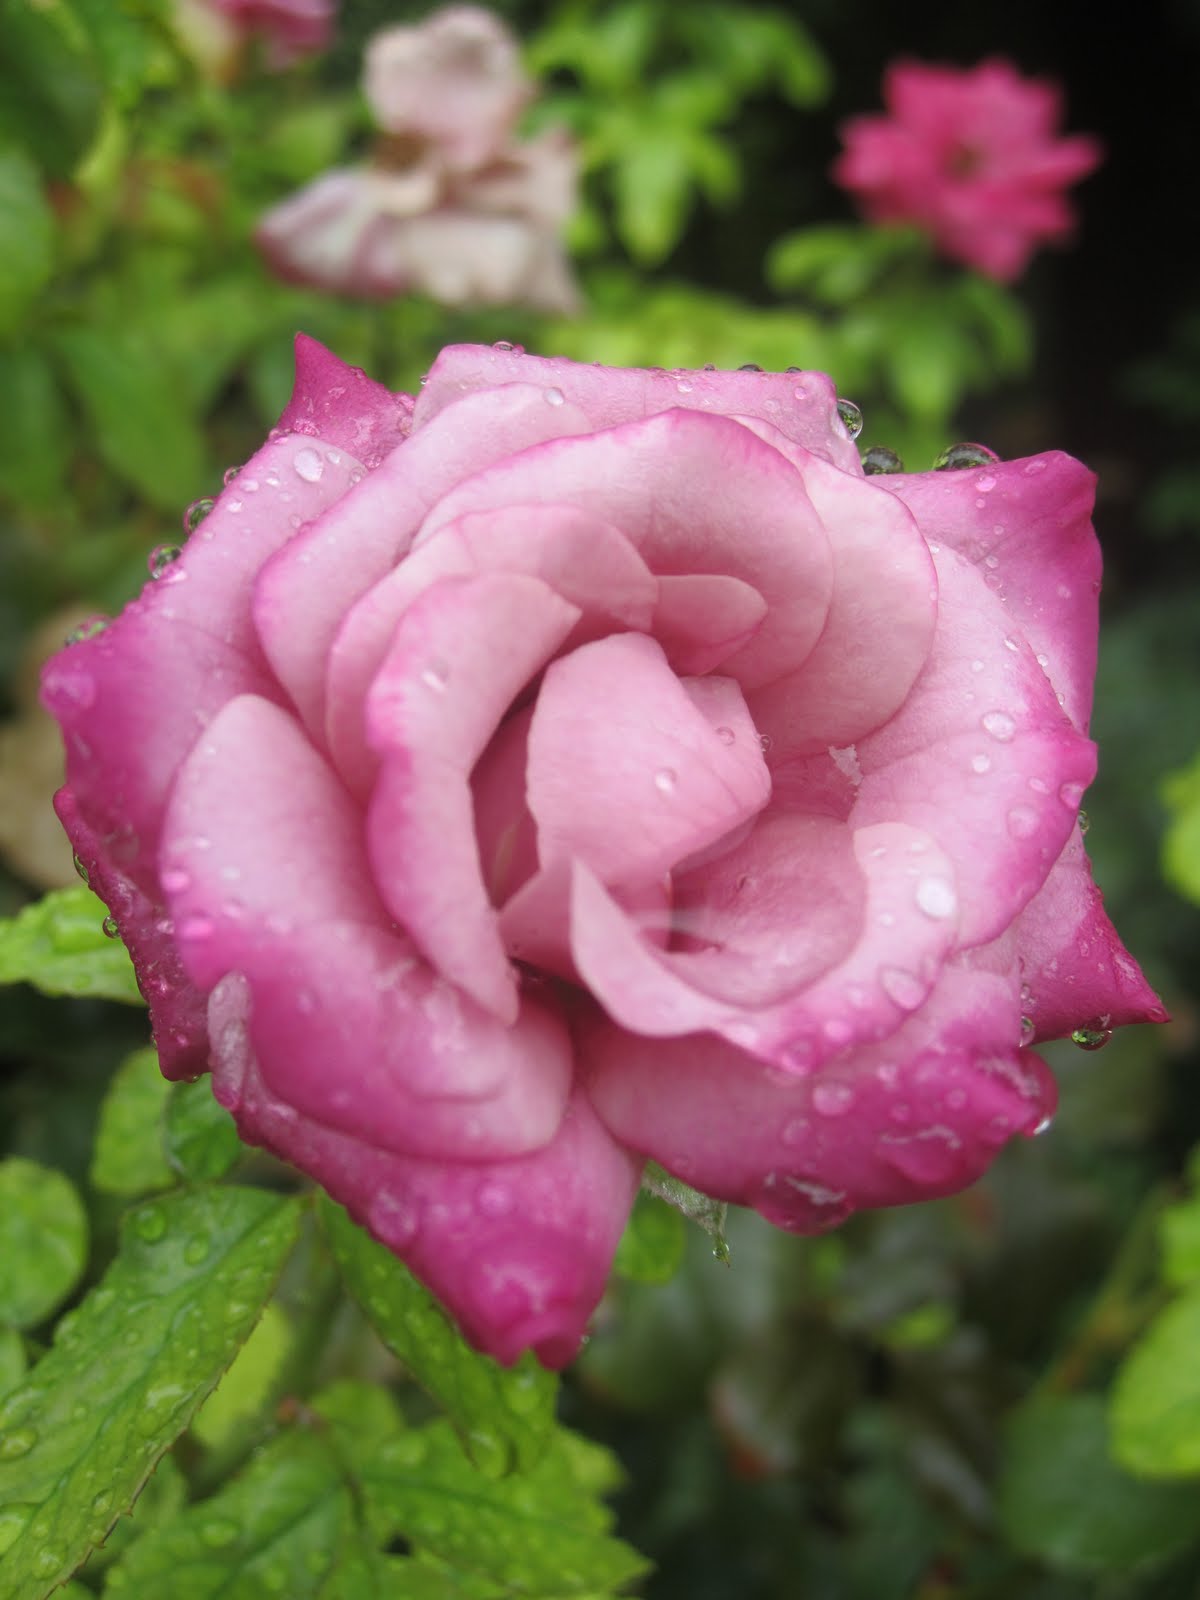 http://1.bp.blogspot.com/-zZL1MwAWw_8/UCNbXgF5Y3I/AAAAAAAAAUo/w52D4ecWzs4/s1600/beautiful-rain-on-the-rose-wallpaper-image-for-backgorunds.JPG